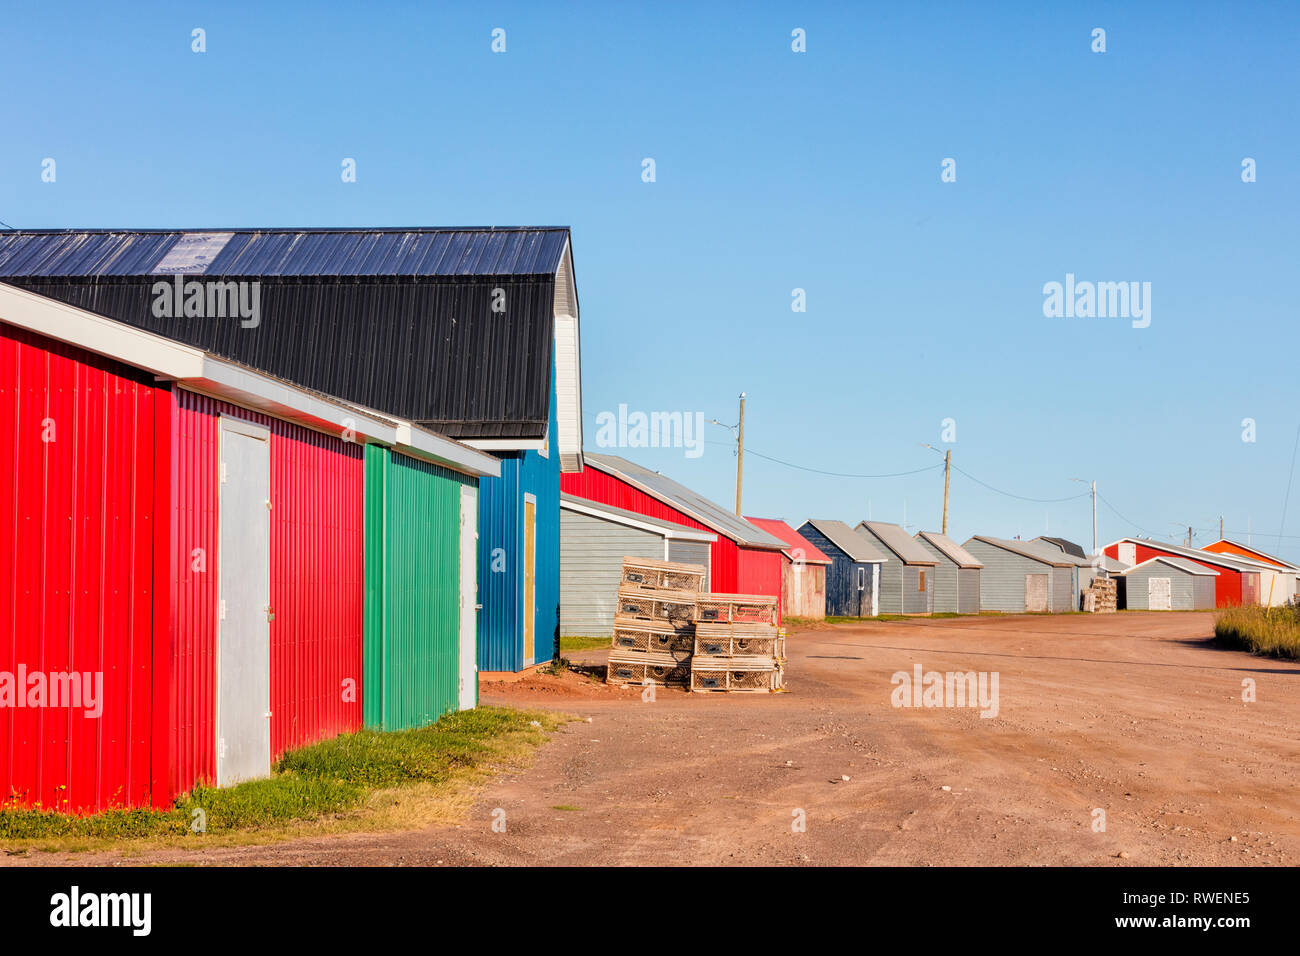 Fishing sheds, Judes Point, Tignish, Prince Edward Island, Canada Stock Photo